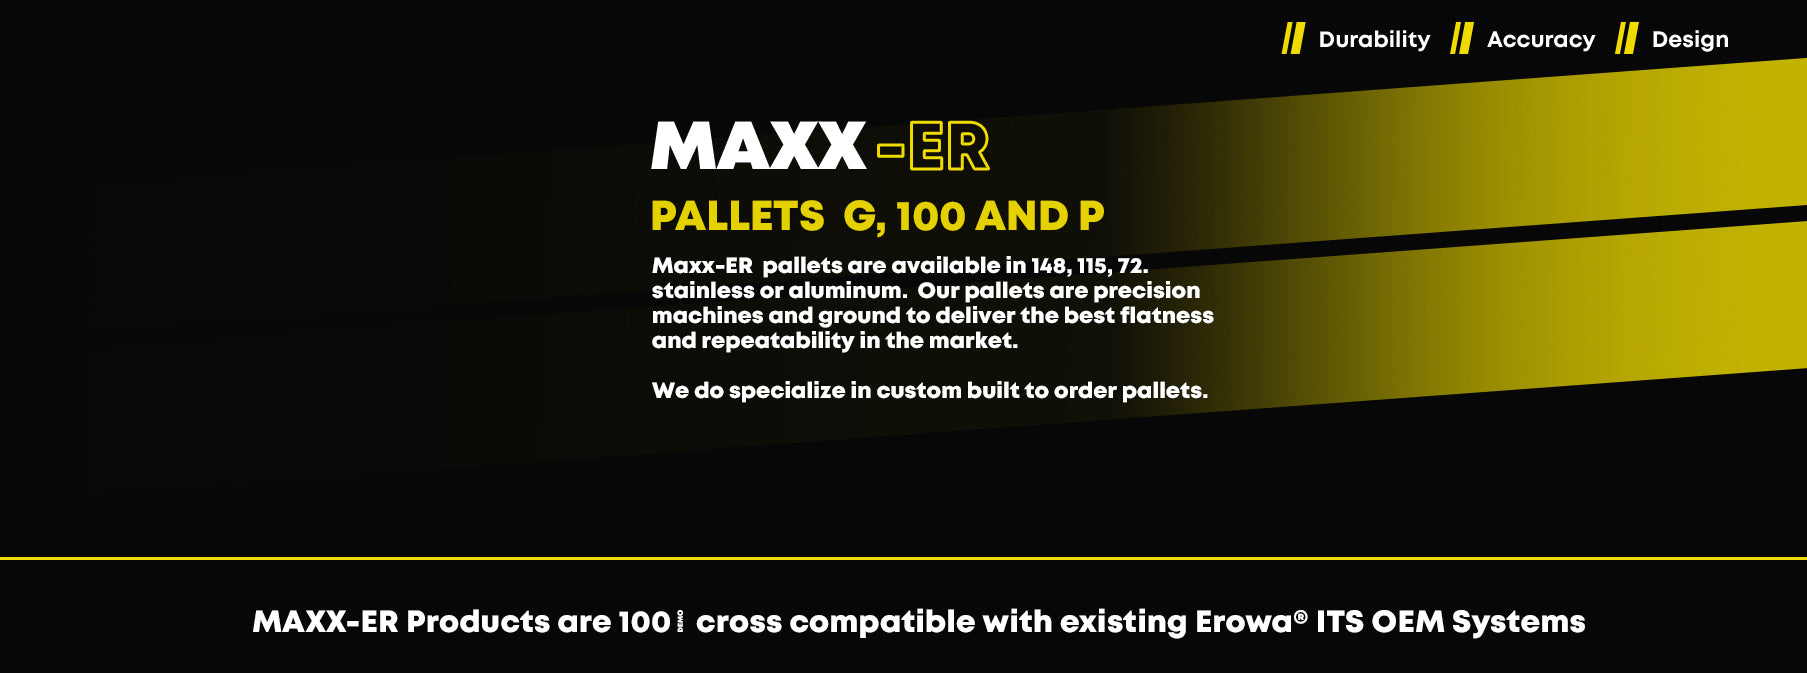 Maxx-ER pallets